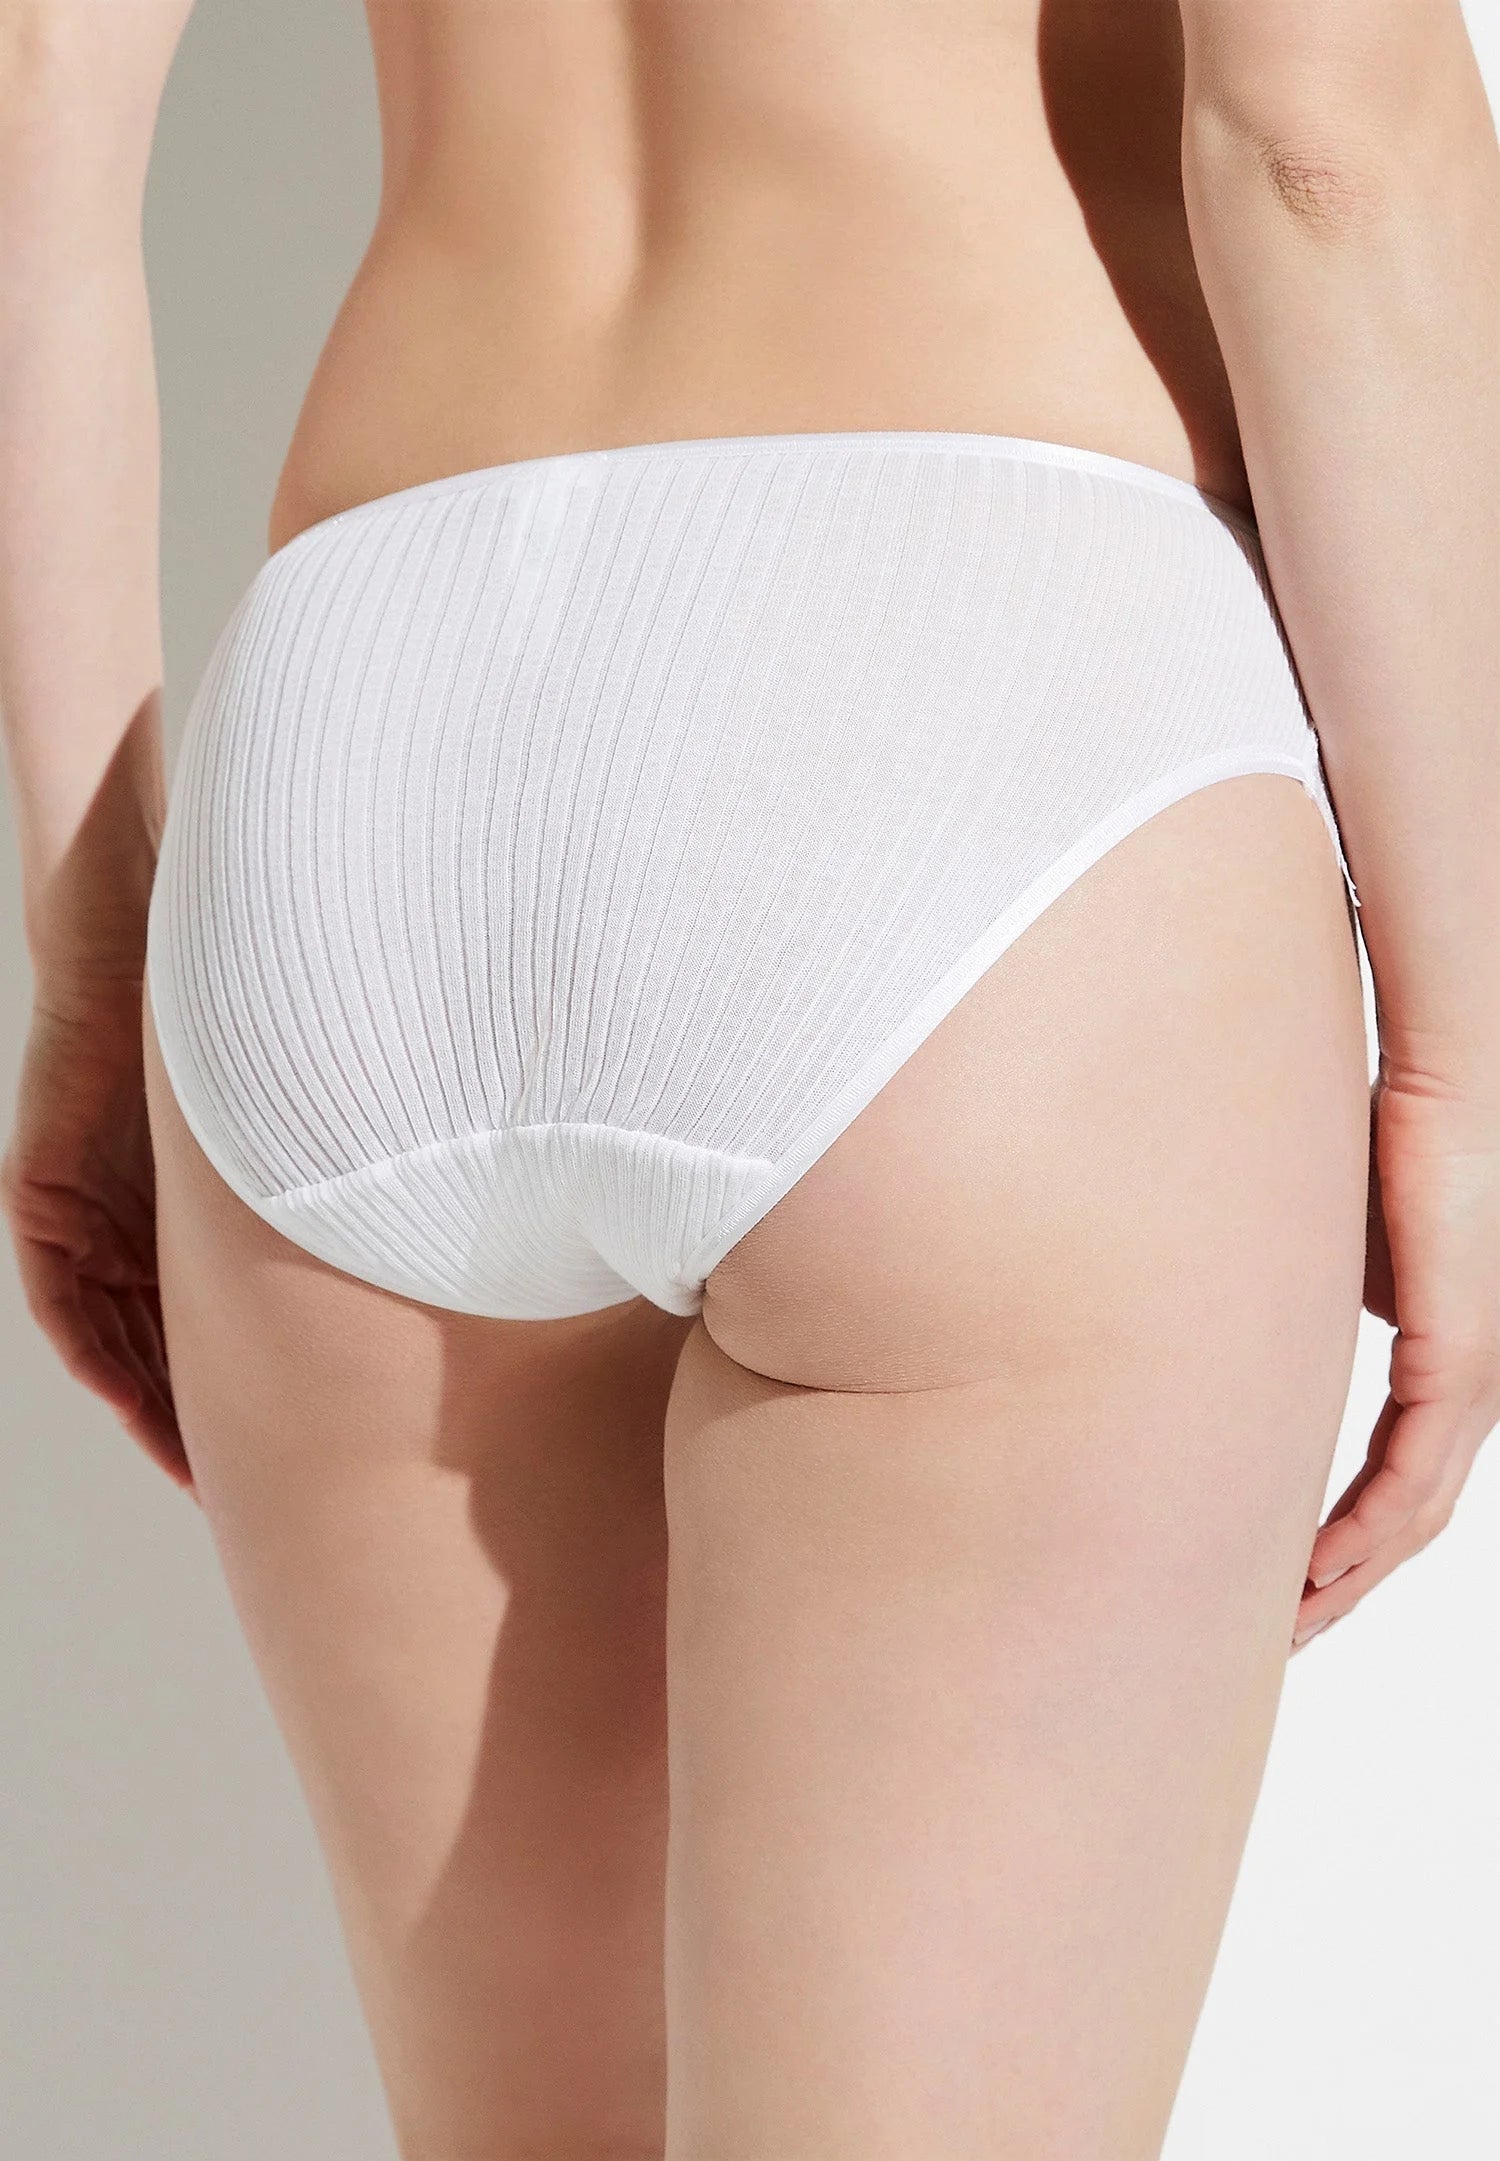 %shop_name_% Zimmerli_Richelieu Cotton Lace Brief _ Underwear_